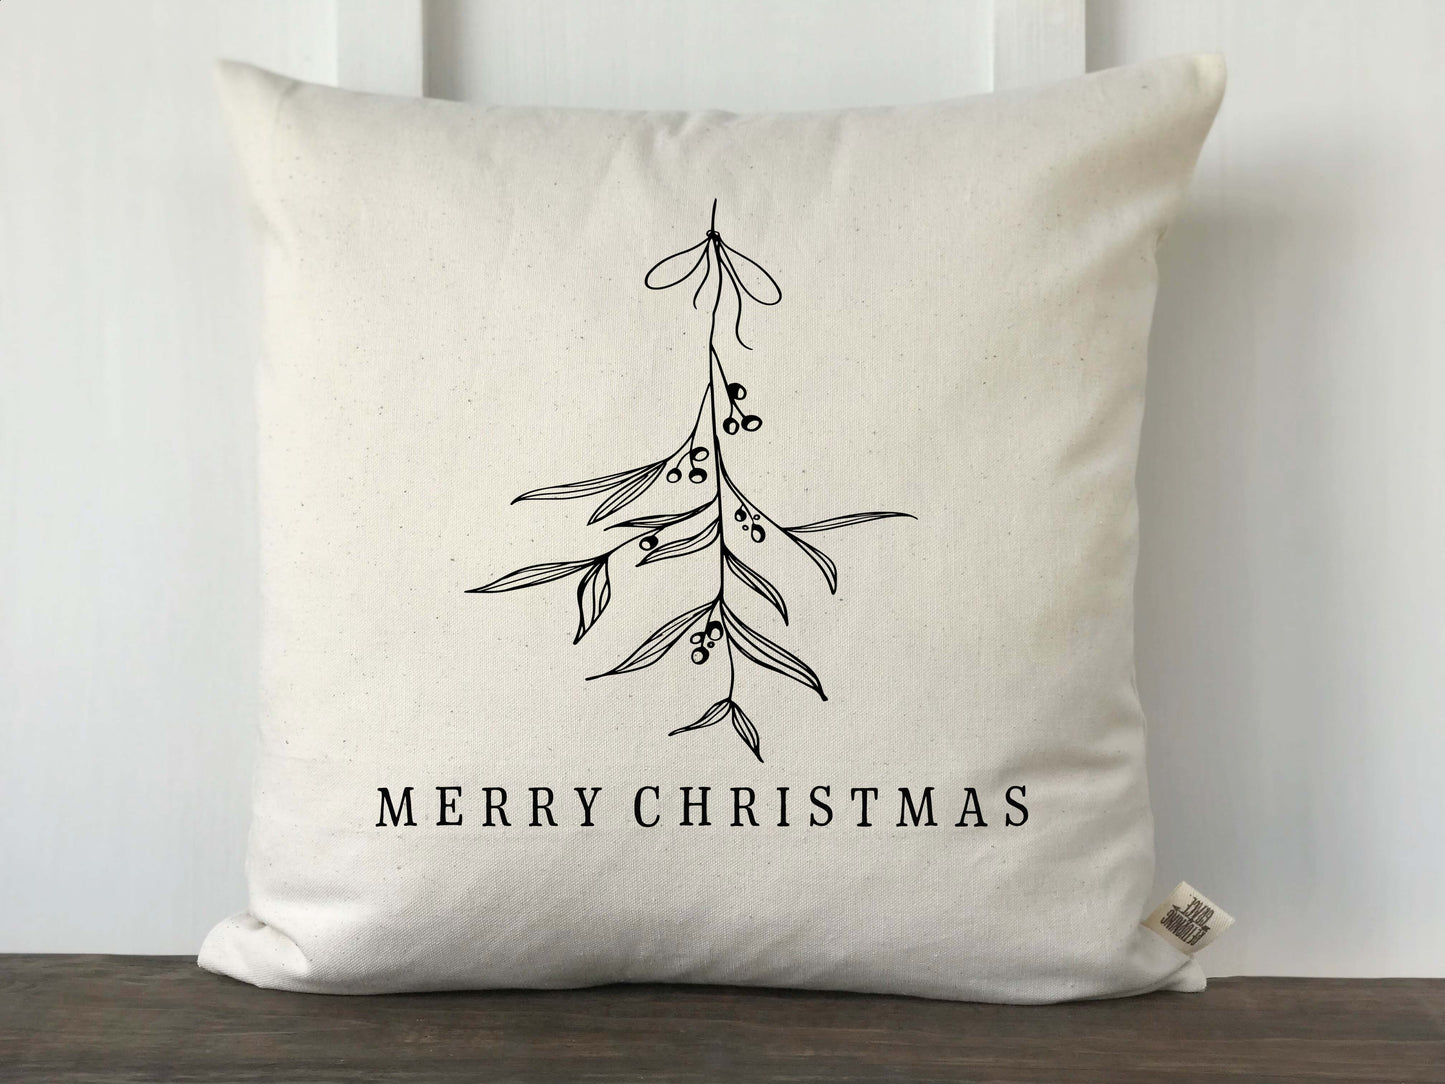 Merry Christmas Handrawn Mistletoe Pillow Cover - Returning Grace Designs